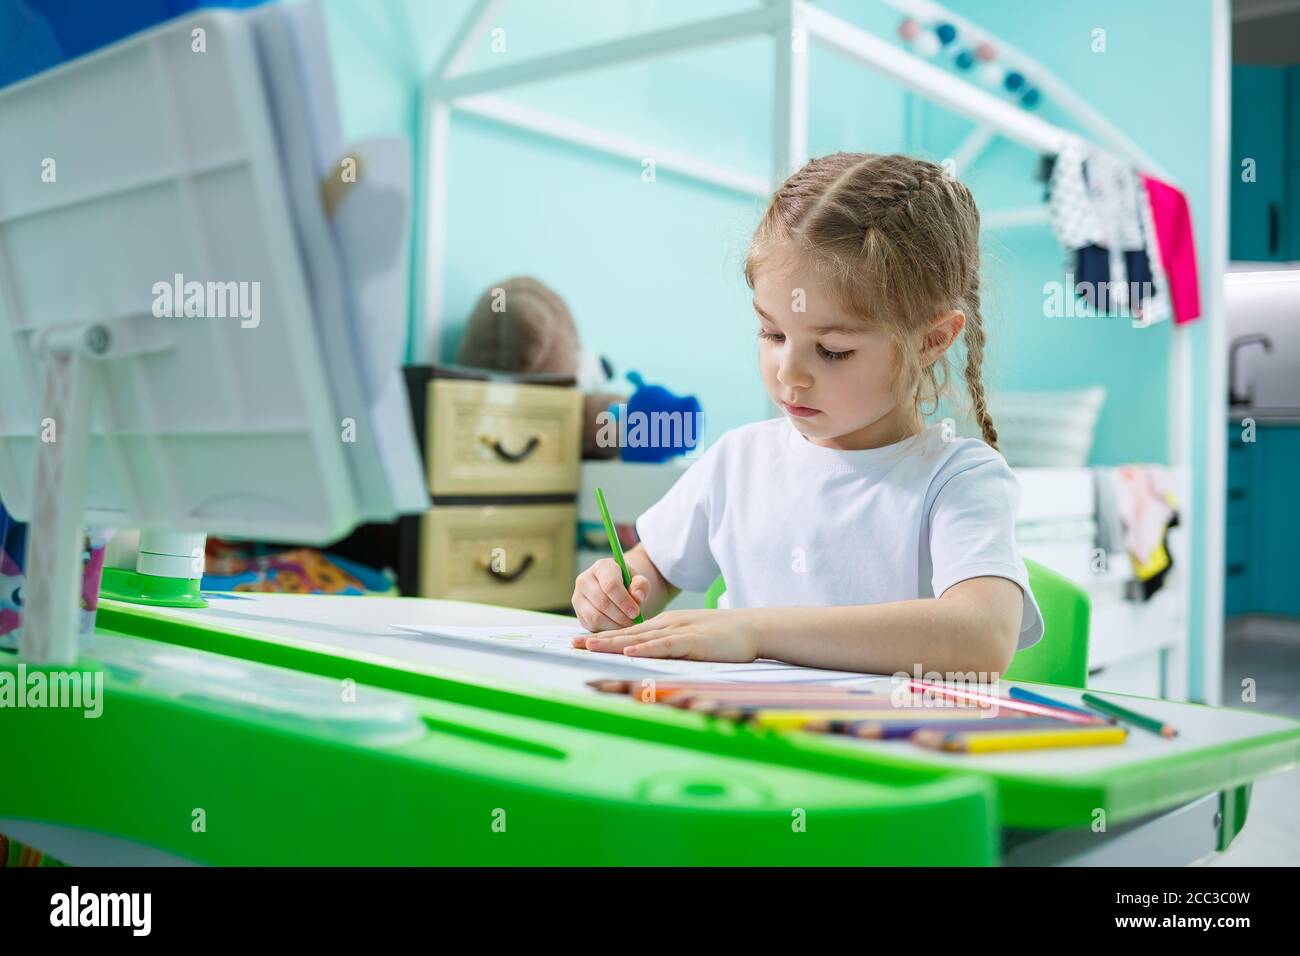 Ritratto di una bambina carina che guarda la macchina fotografica e sorride mentre disegnano le immagini o fanno i compiti, seduto ad un tavolo nell'interno domestico Foto Stock